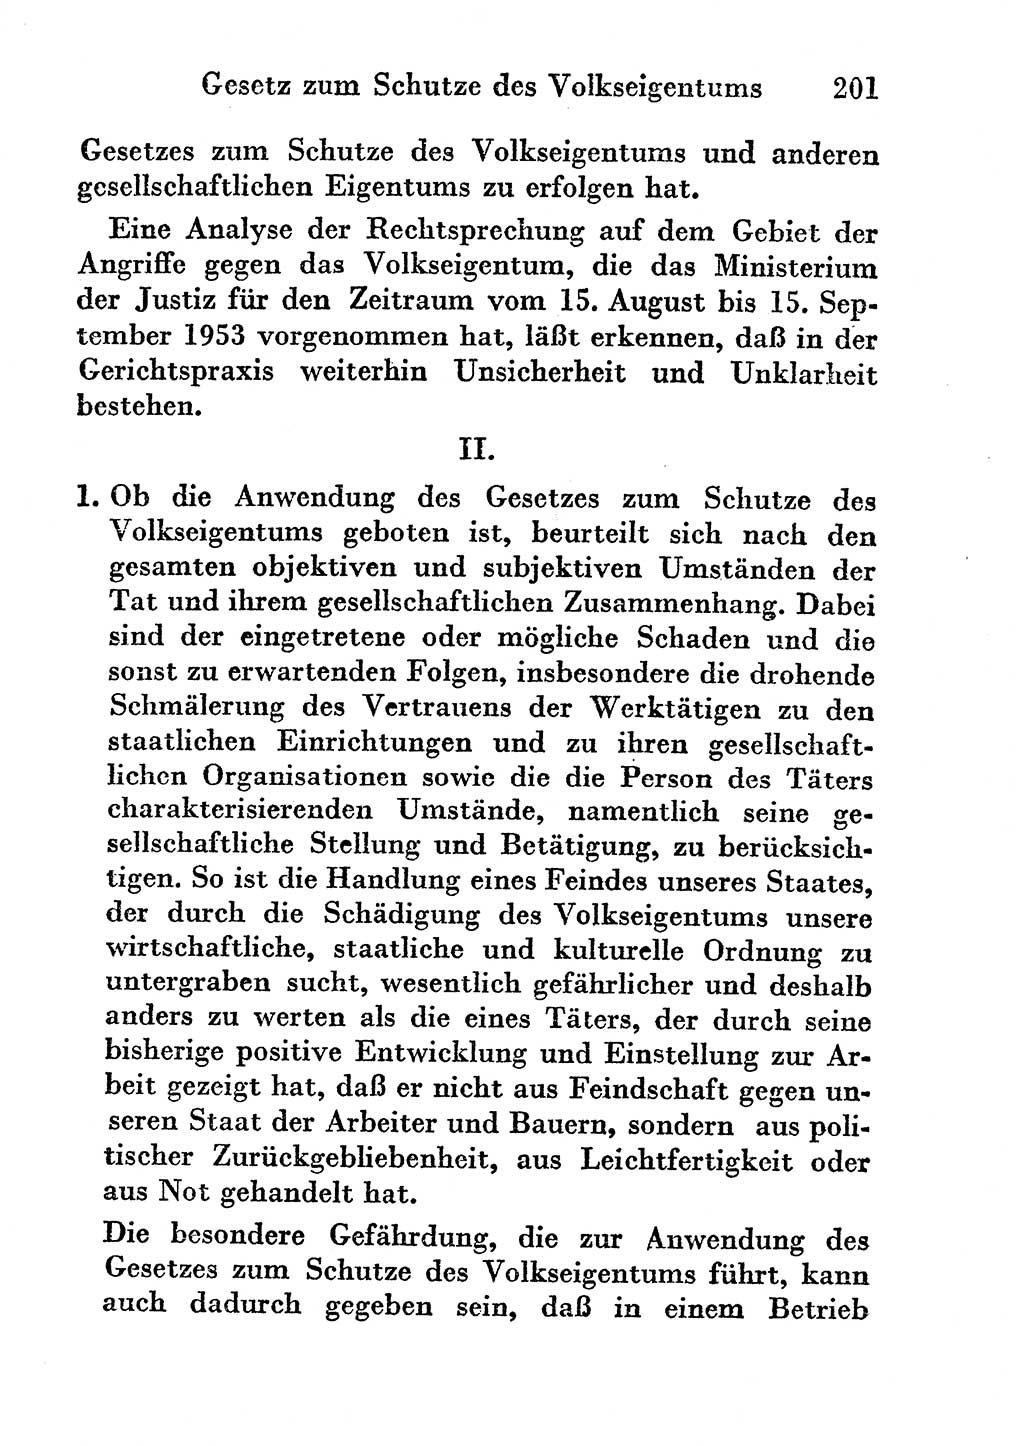 Strafgesetzbuch (StGB) und andere Strafgesetze [Deutsche Demokratische Republik (DDR)] 1956, Seite 201 (StGB Strafges. DDR 1956, S. 201)